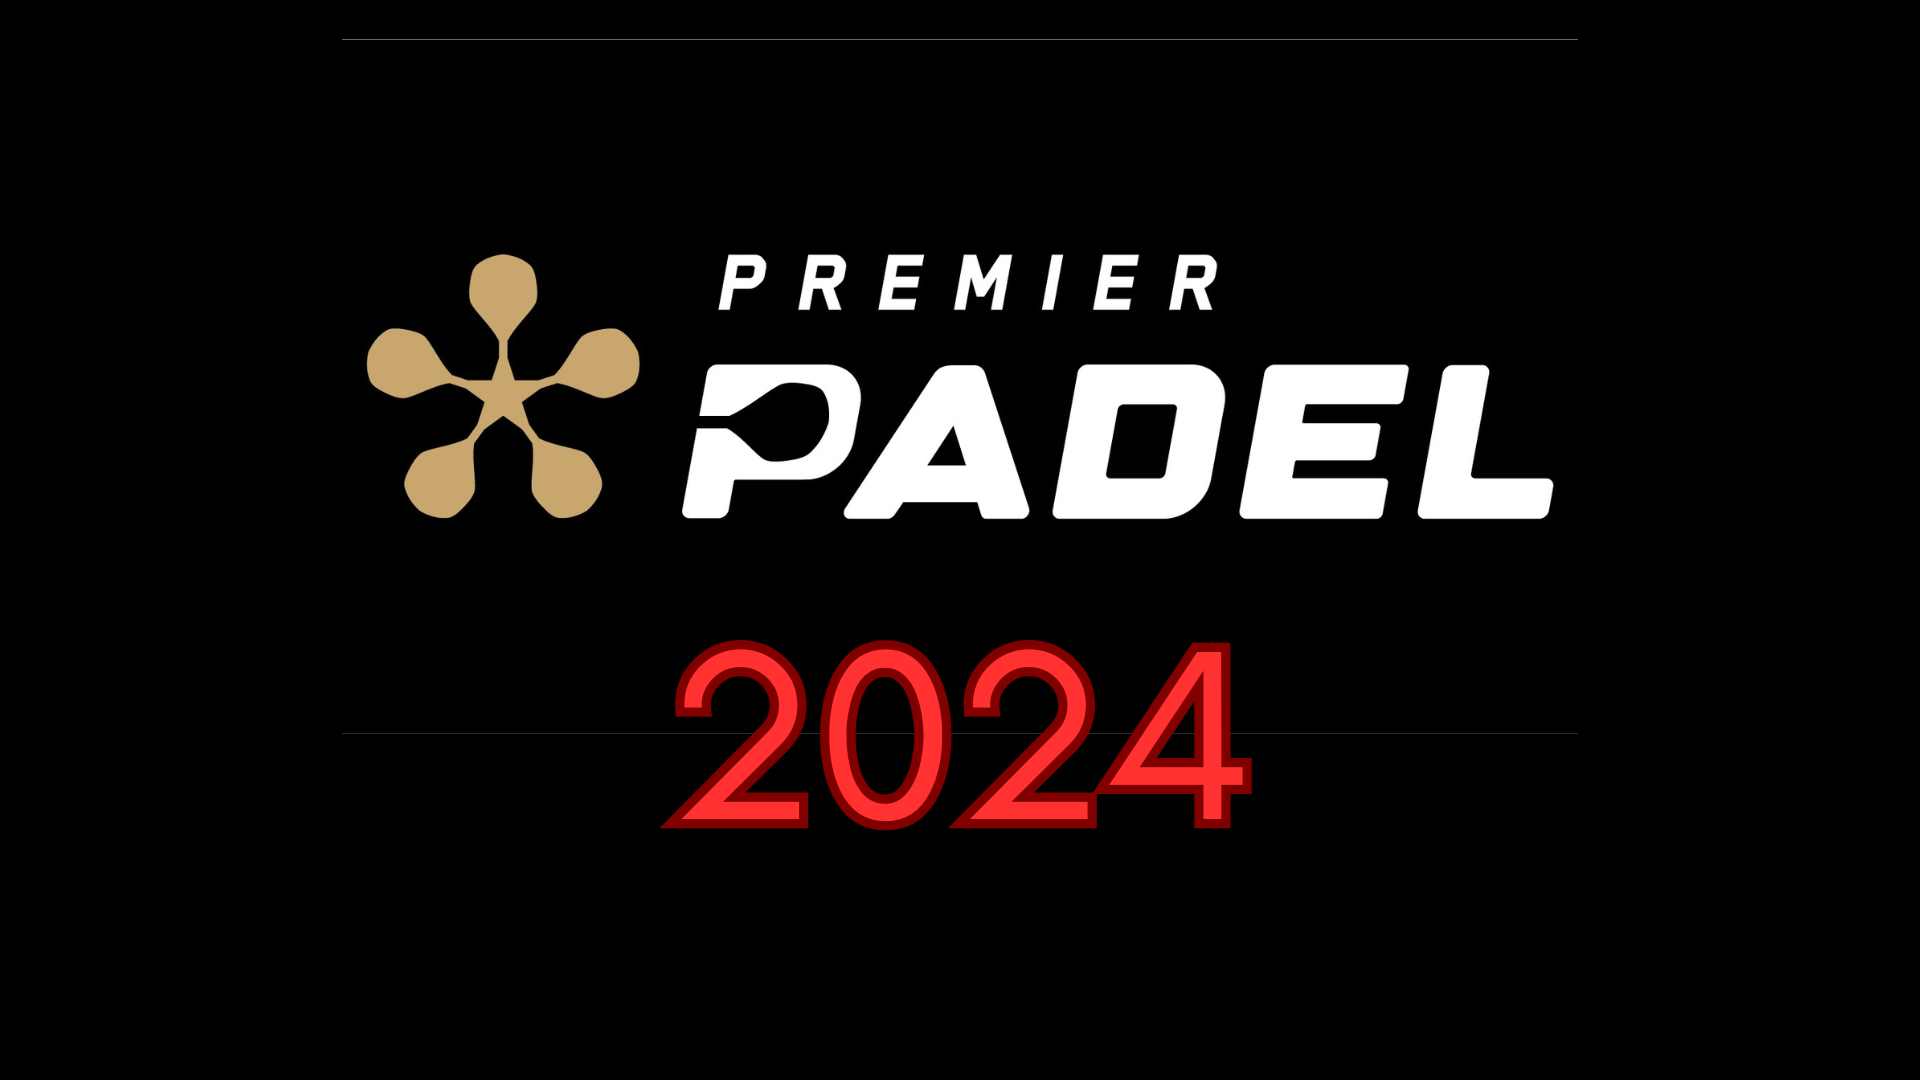 Premier Padel 2024 logo mercato